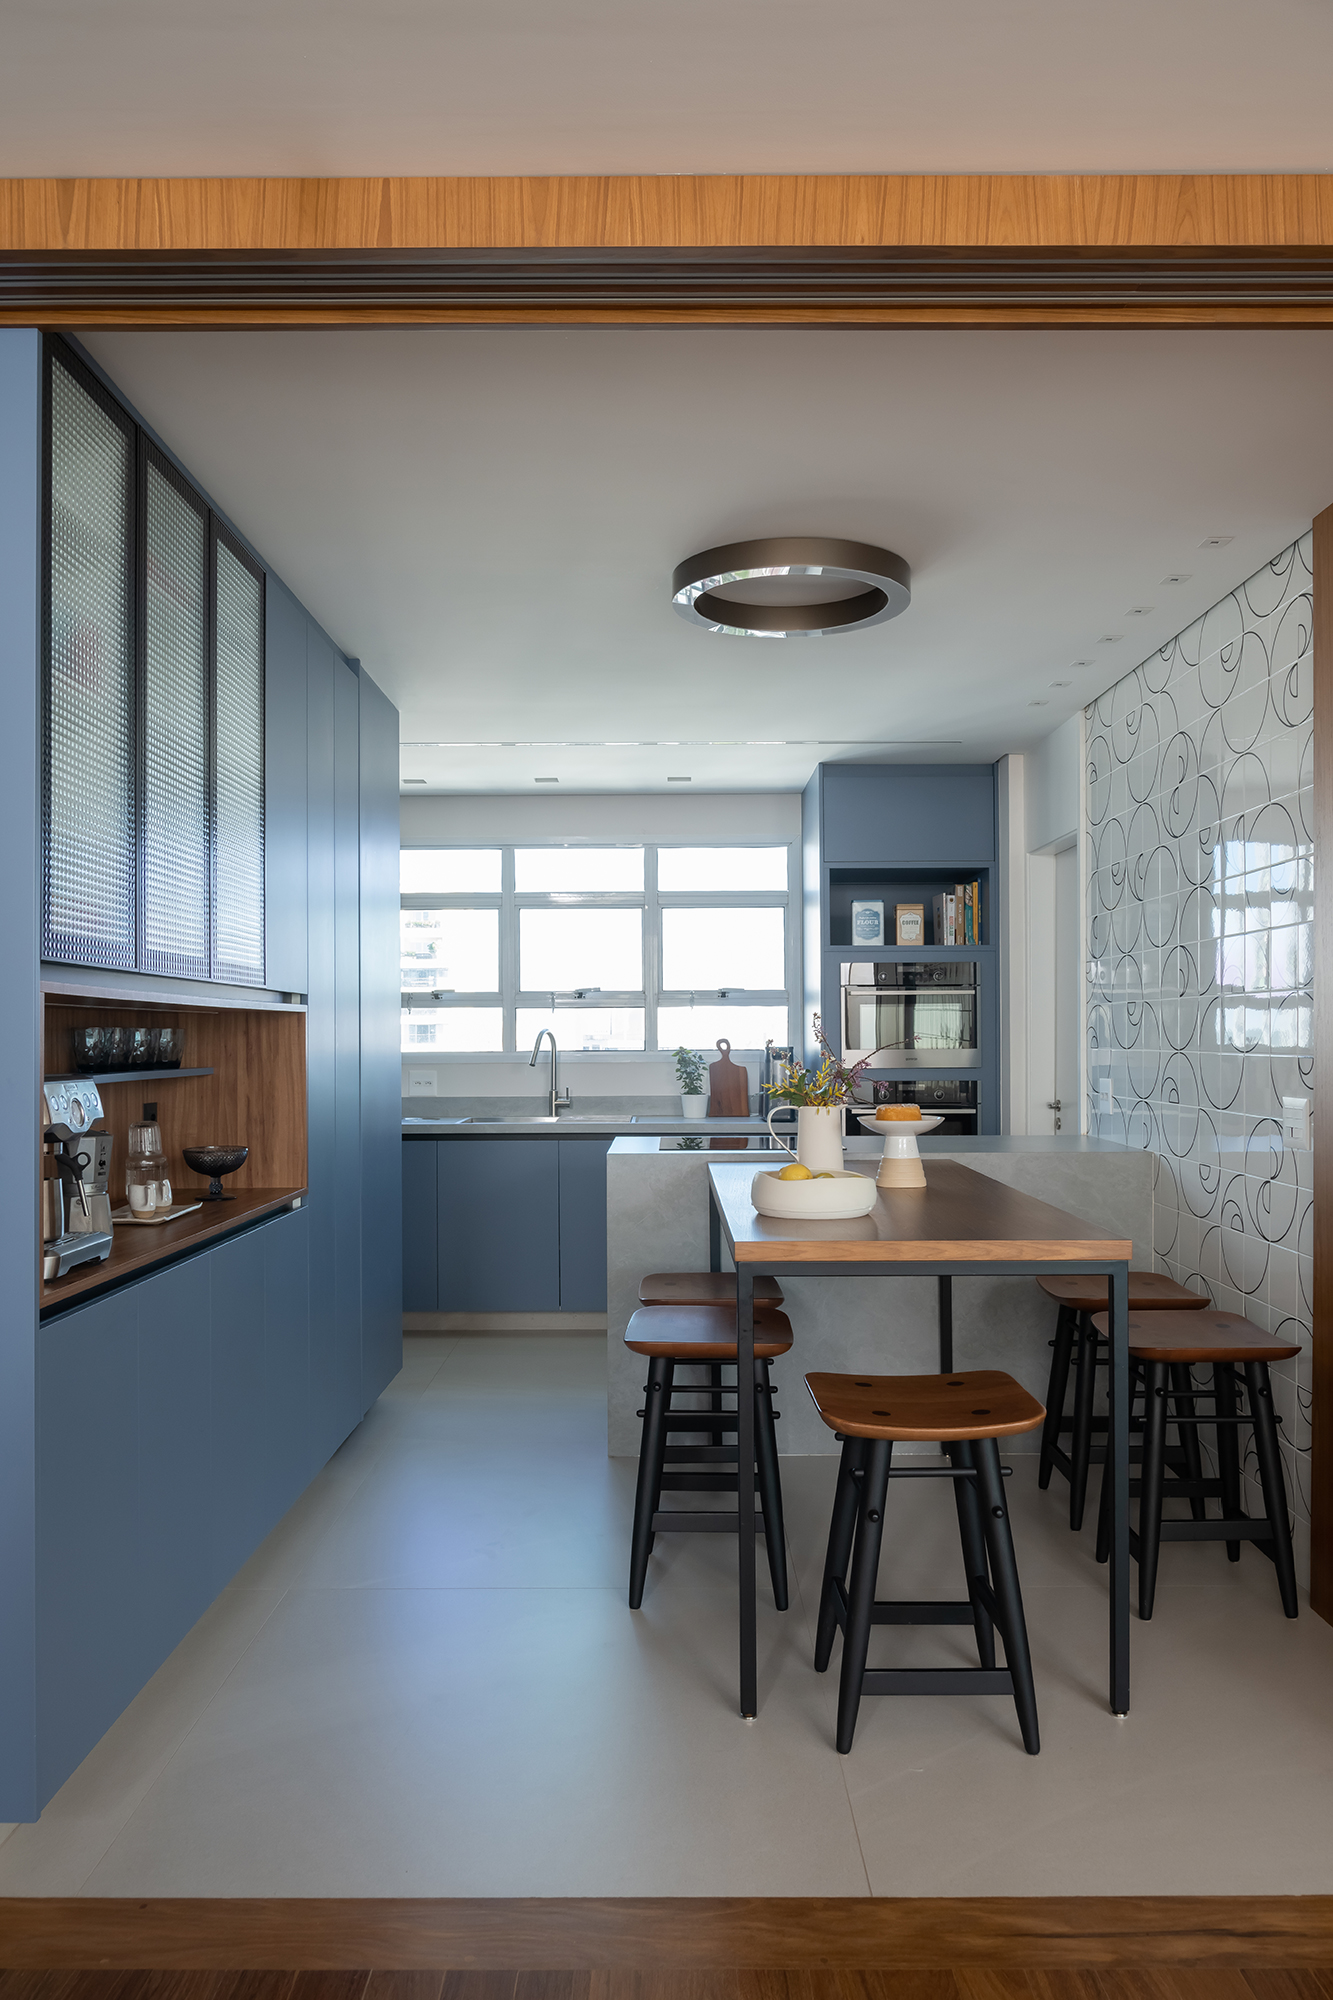 Apartamento de 188 m² ganha dois cooktops na cozinha e balanços na sala, Projeto Raízes Arquitetos. Na foto, cozinha com marcenaria azul e ilha. Cooktop e nicho para café.